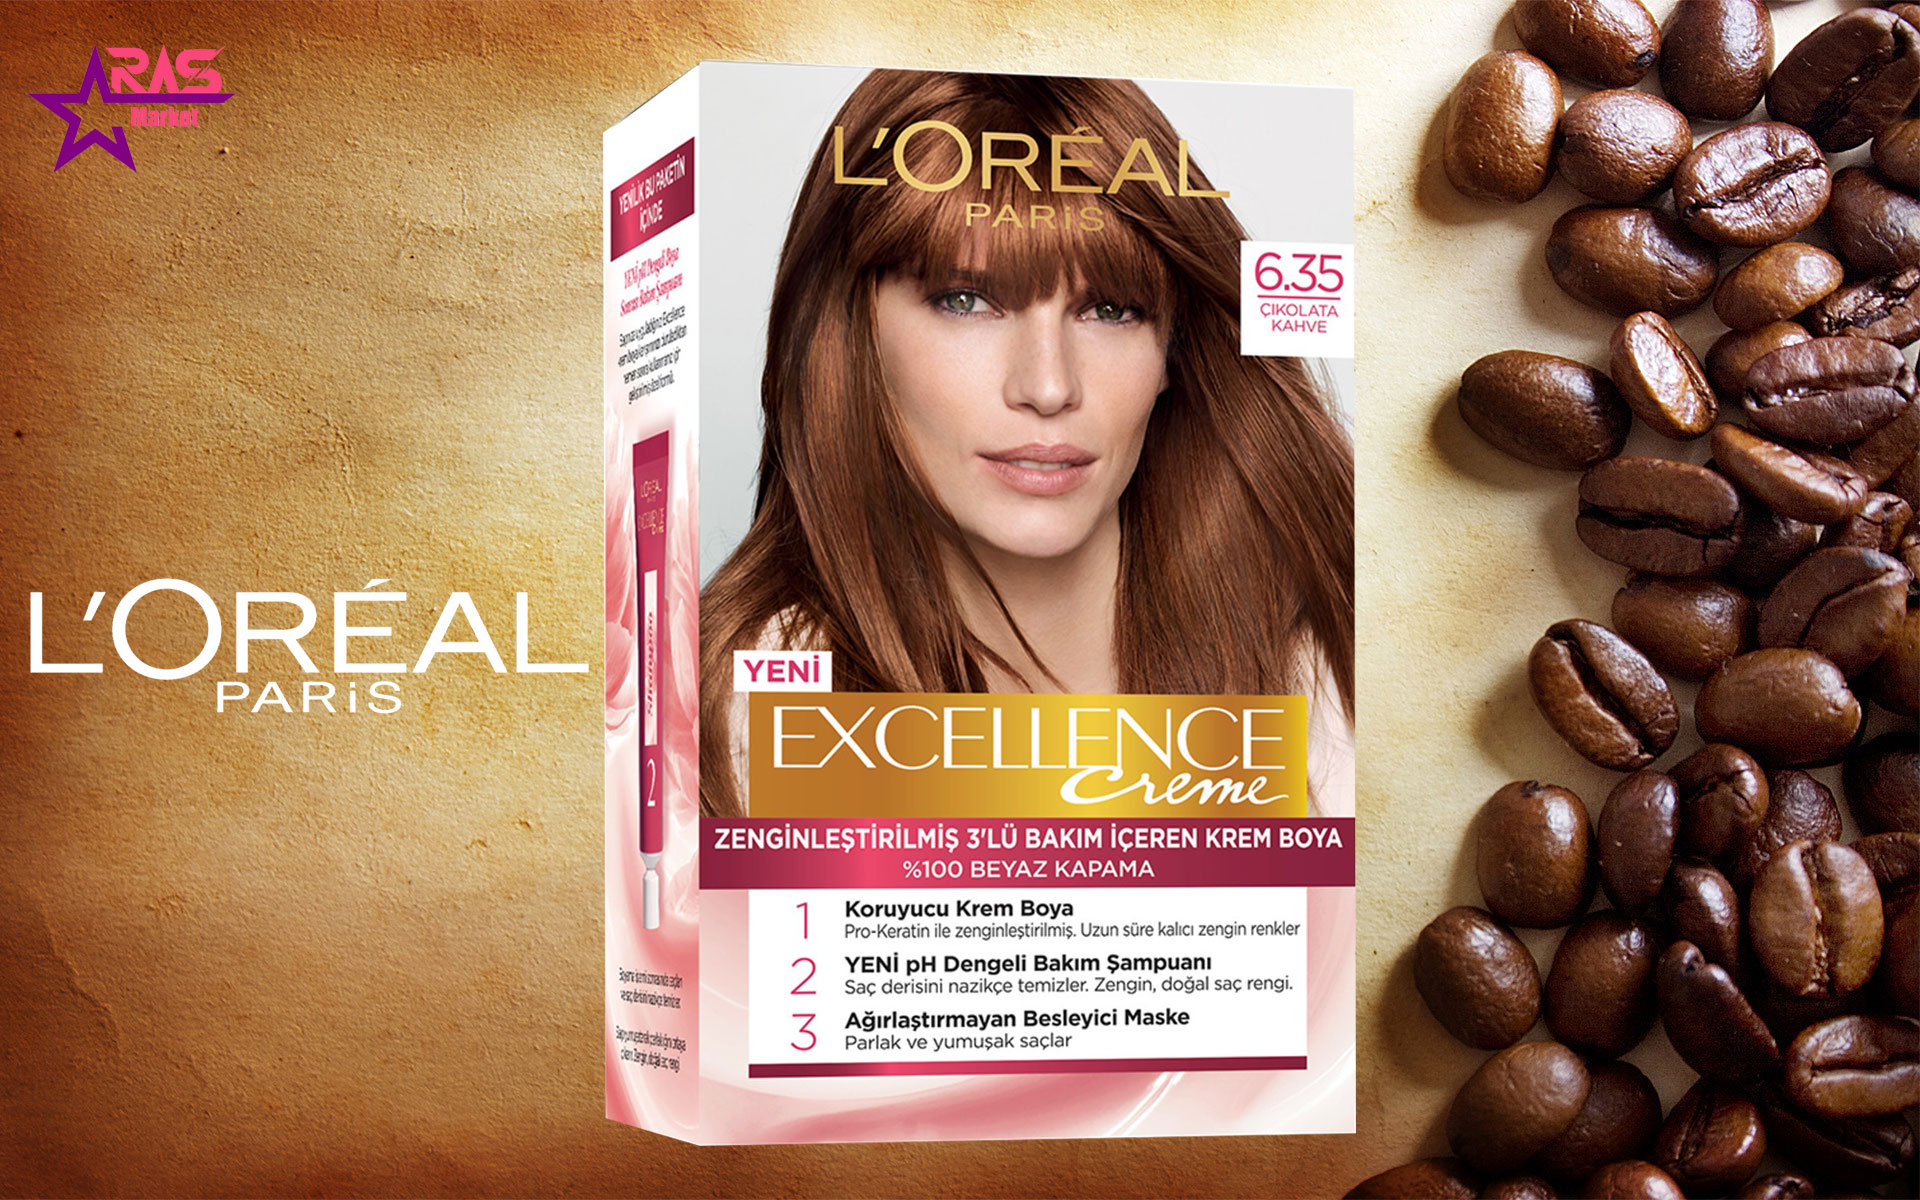 کیت رنگ مو لورآل سری Excellence شماره 6.35 ، خرید اینترنتی محصولات شوینده و بهداشتی ، بهداشت بانوان